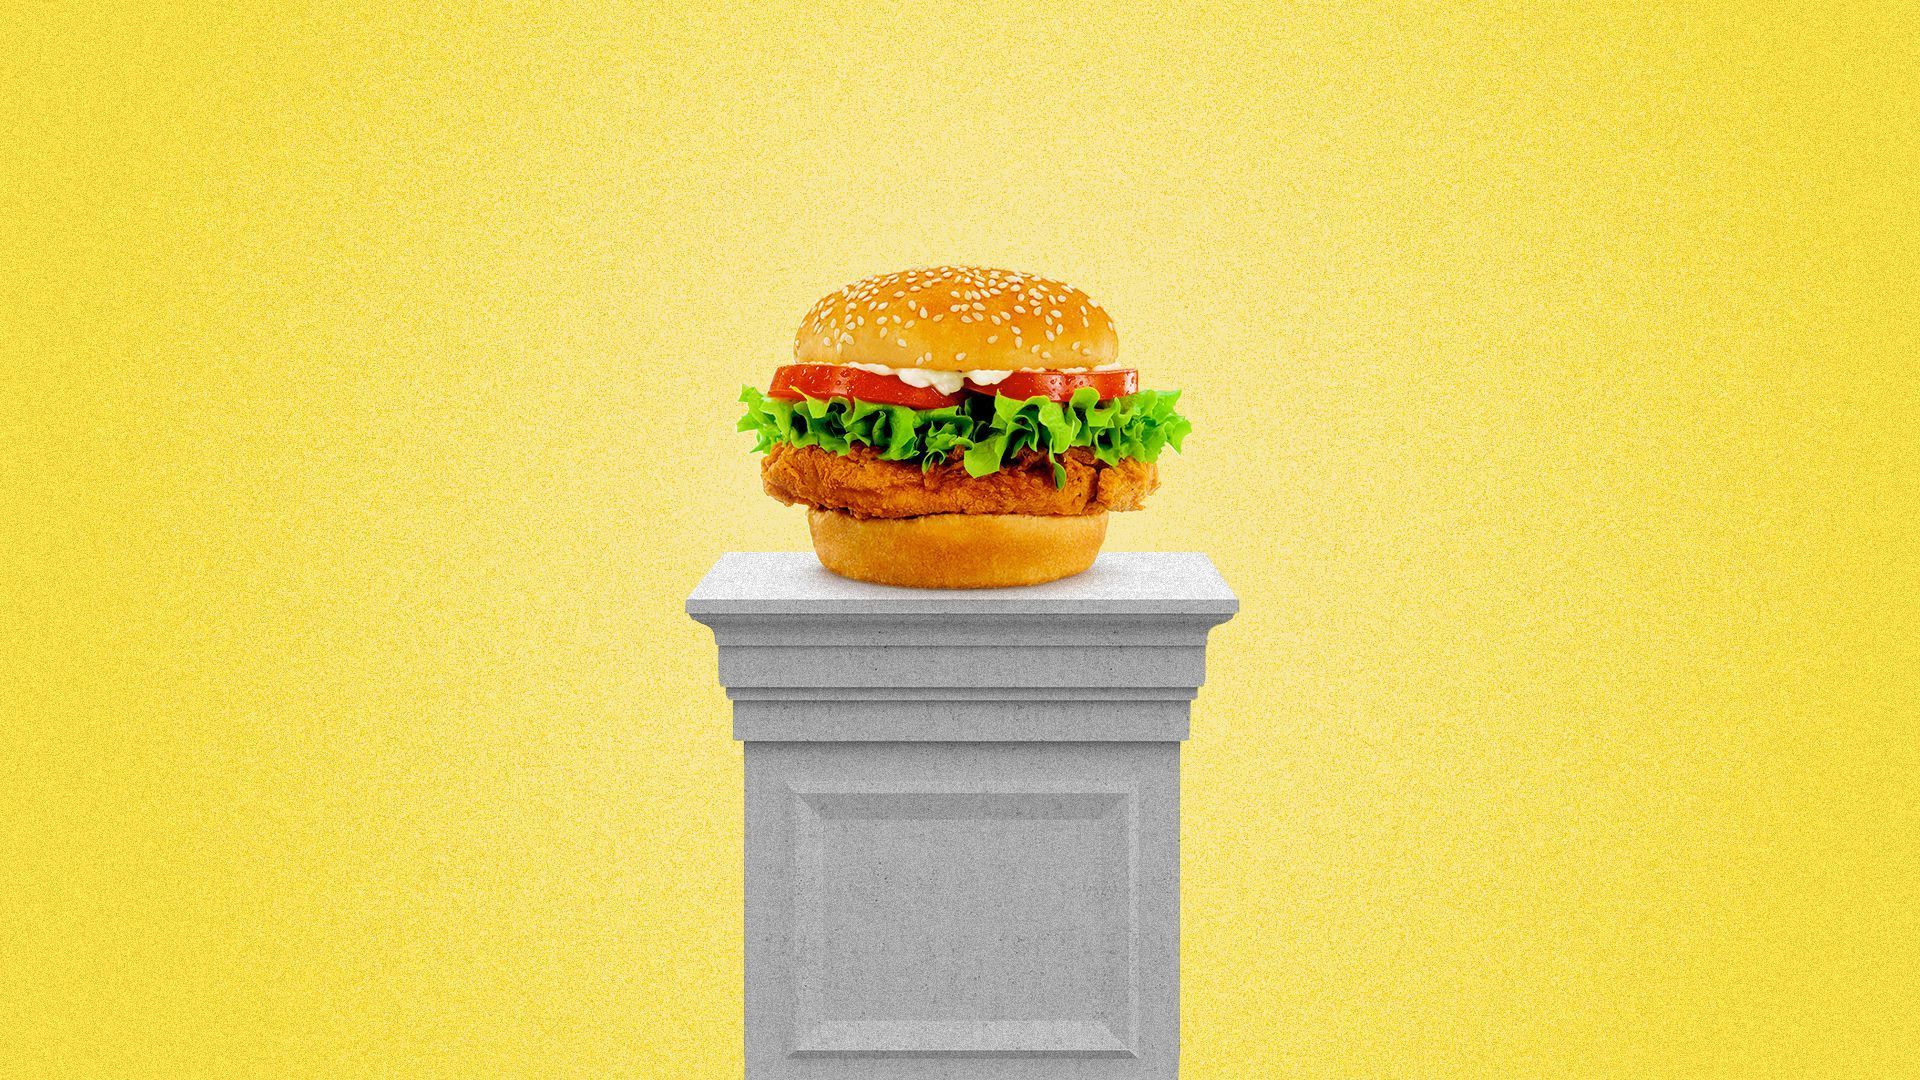 Popeye's spicy chicken sandwich on a pedestal